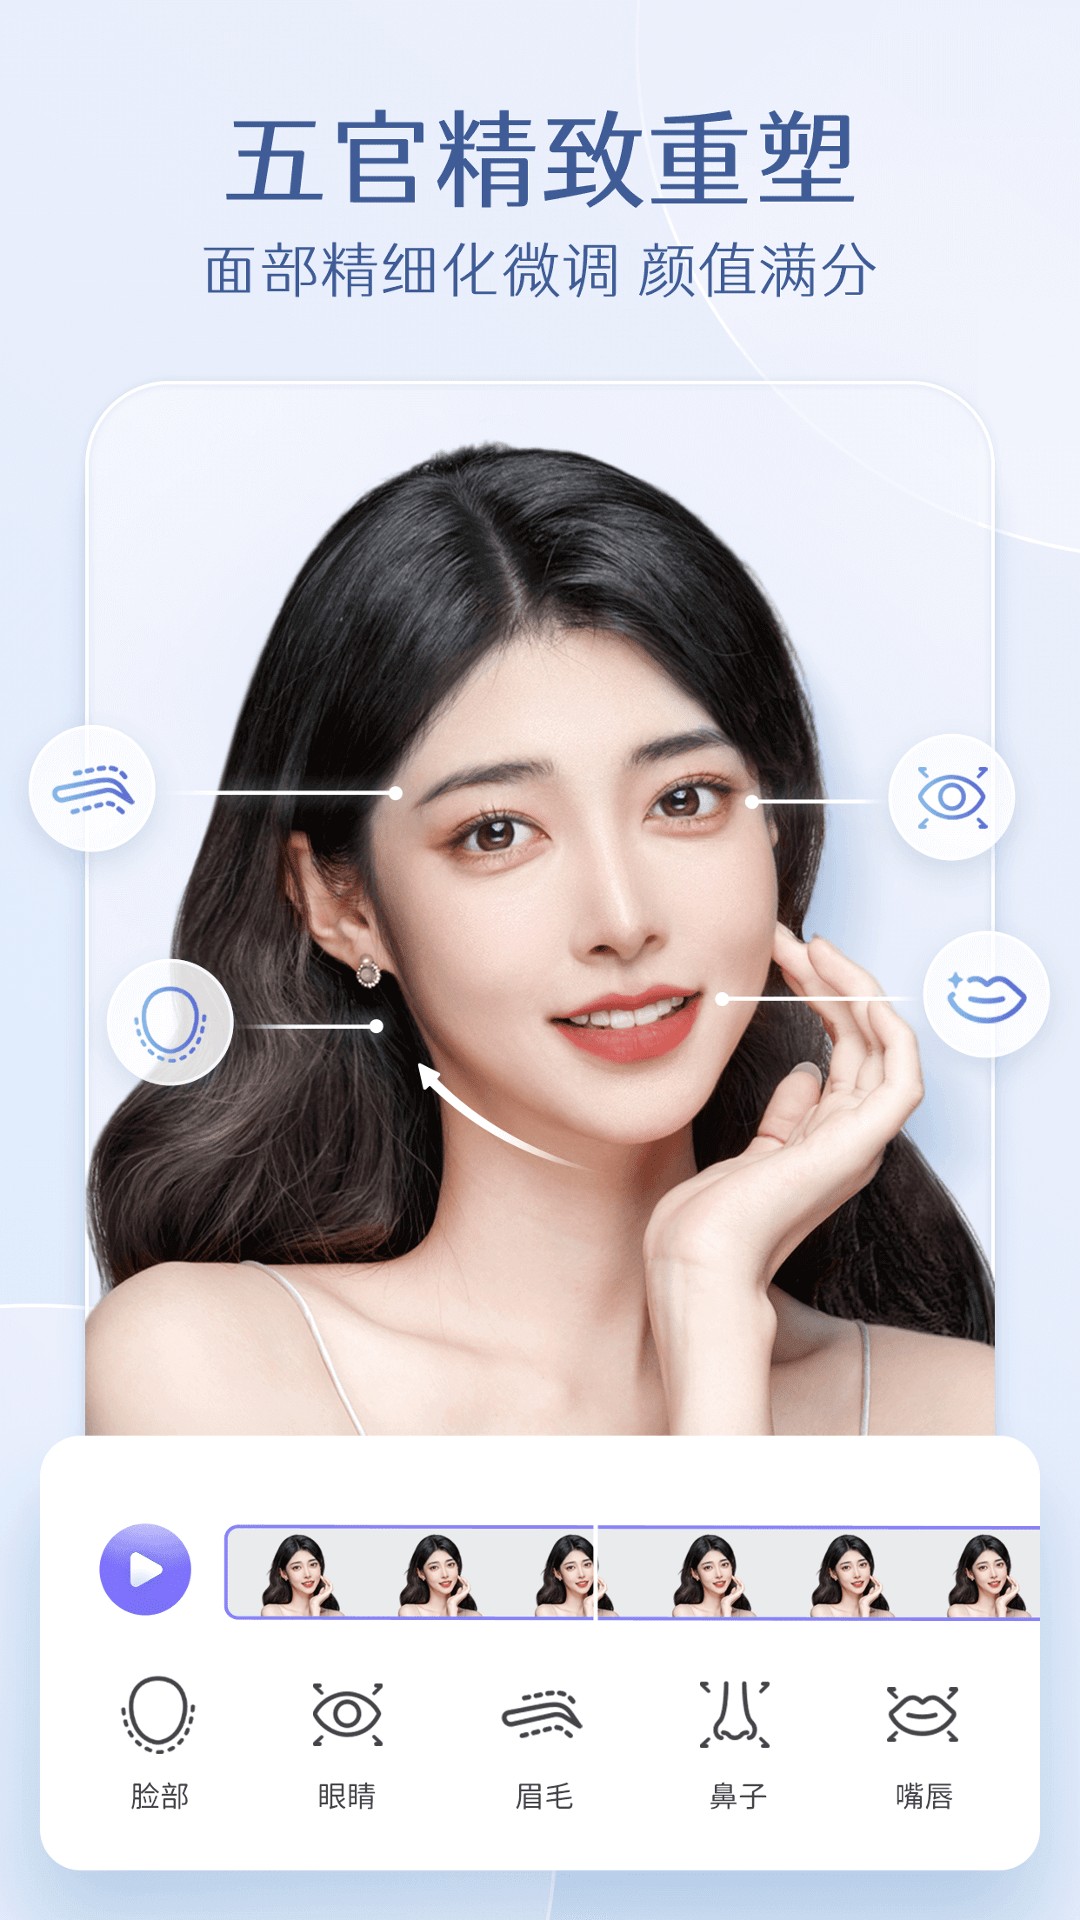 安卓prettyup视频美化瘦身 视频修图身材脸部优化软件下载